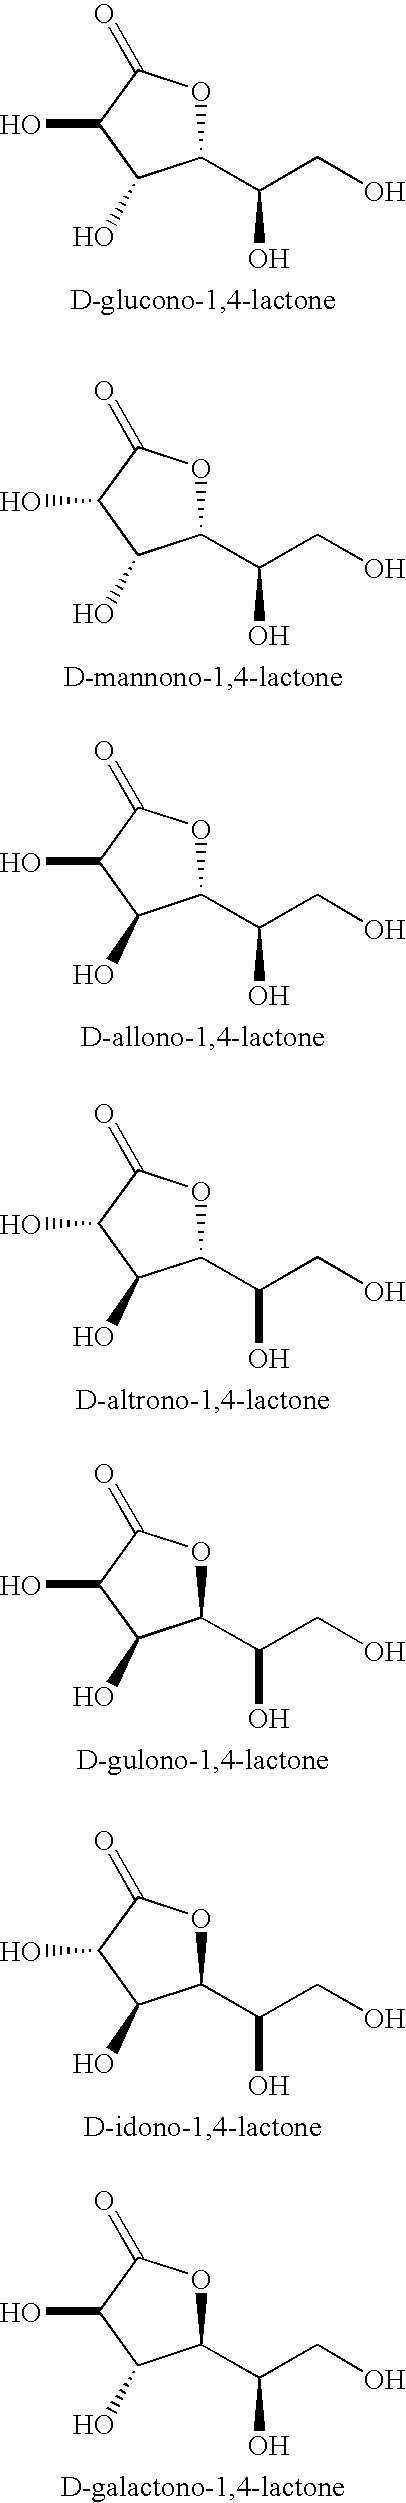 Synthesis of aldonolactones, aldarolactones, and aldarodilactones using gas sparging